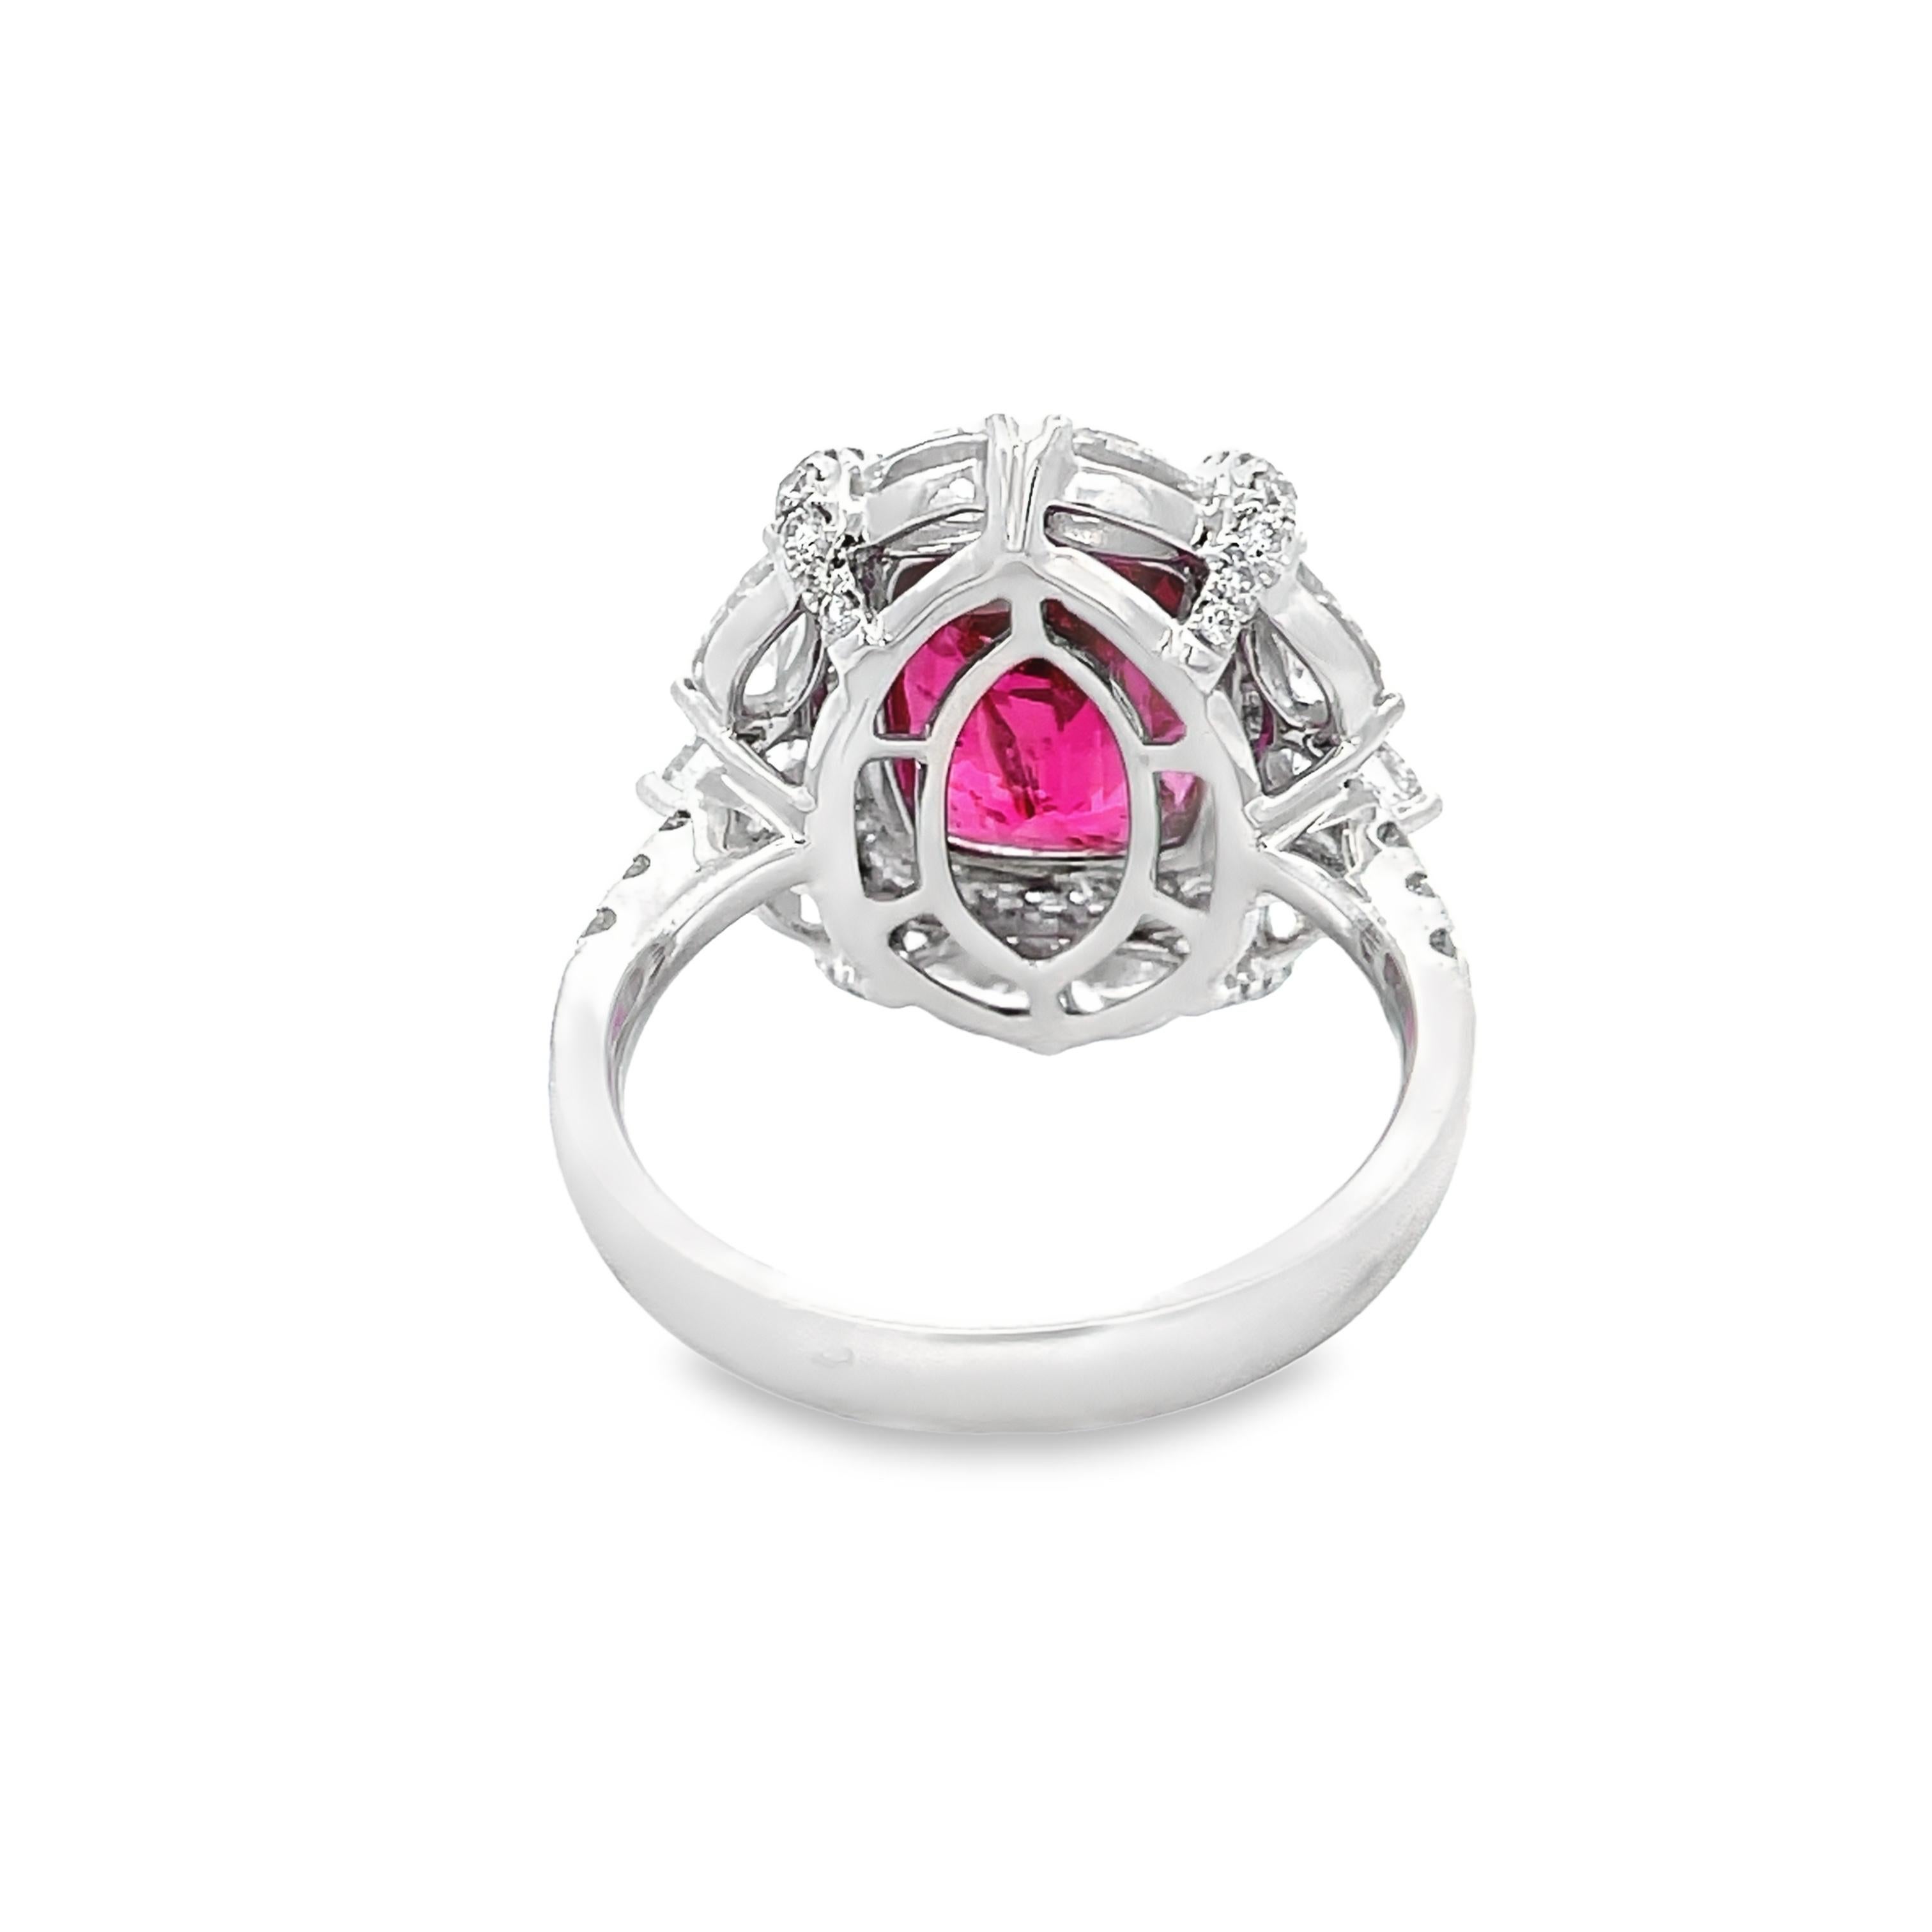 Entdecken Sie unvergleichliche Schönheit mit unserem AGL-zertifizierten Ring aus 6,07 Karat rosa Saphiren und 2,23 Karat weißen Diamanten (gemischte Form) mit 18 KW. Dieses exquisite Stück besticht durch seinen leuchtenden rosa Saphir in der Mitte,